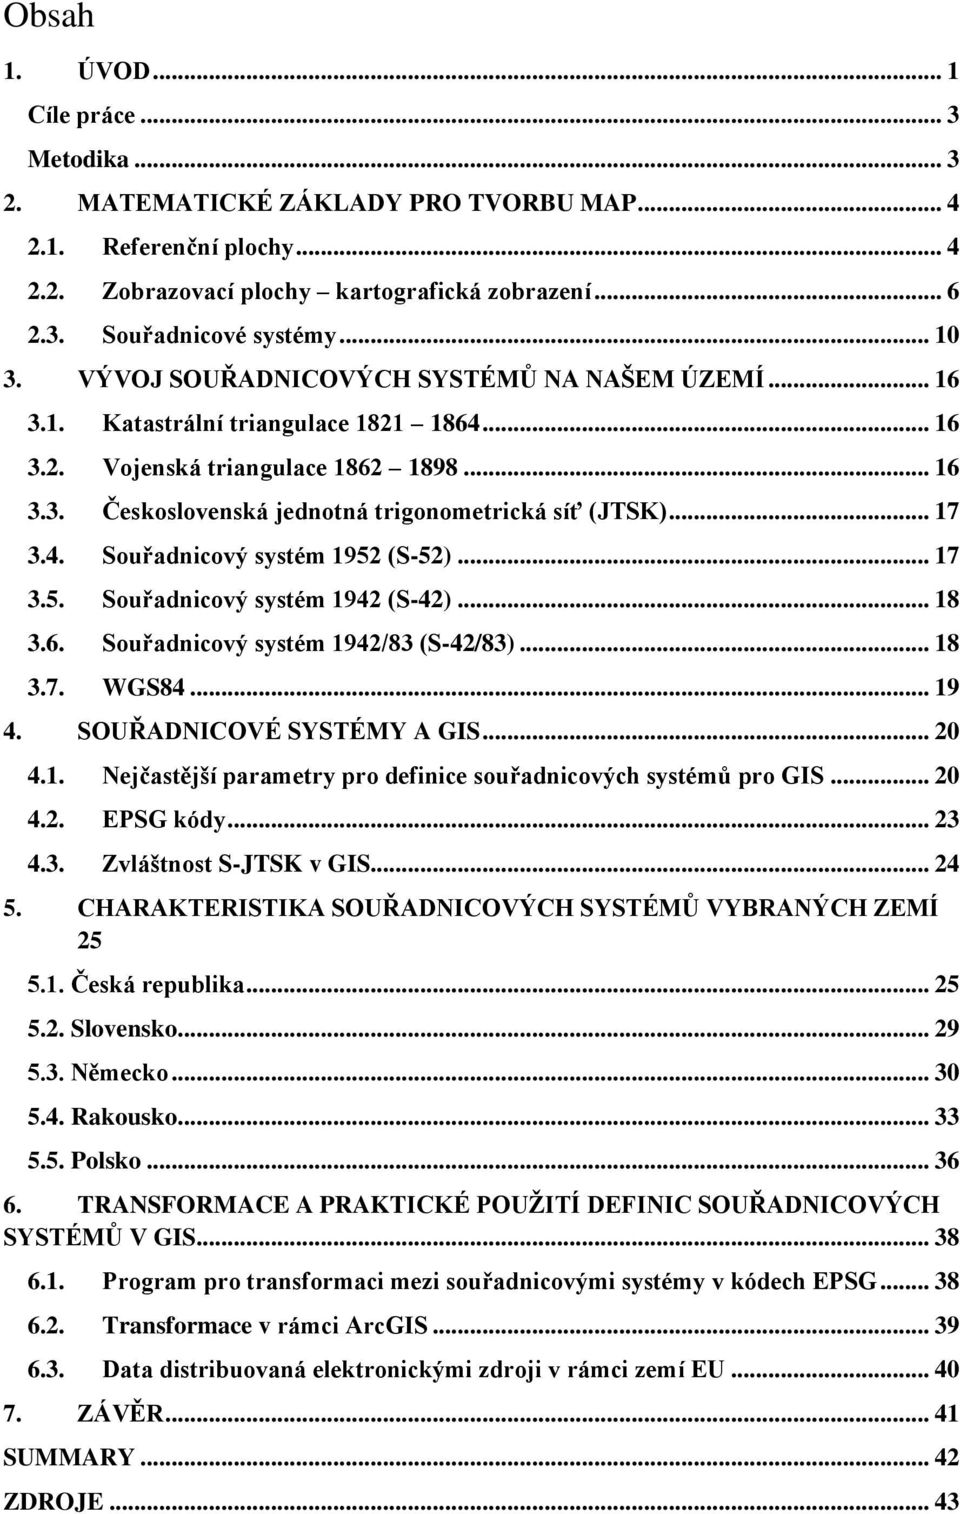 .. 17 3.4. Souřadnicový systém 1952 (S-52)... 17 3.5. Souřadnicový systém 1942 (S-42)... 18 3.6. Souřadnicový systém 1942/83 (S-42/83)... 18 3.7. WGS84... 19 4. SOUŘADNICOVÉ SYSTÉMY A GIS... 20 4.1. Nejčastější parametry pro definice souřadnicových systémů pro GIS.